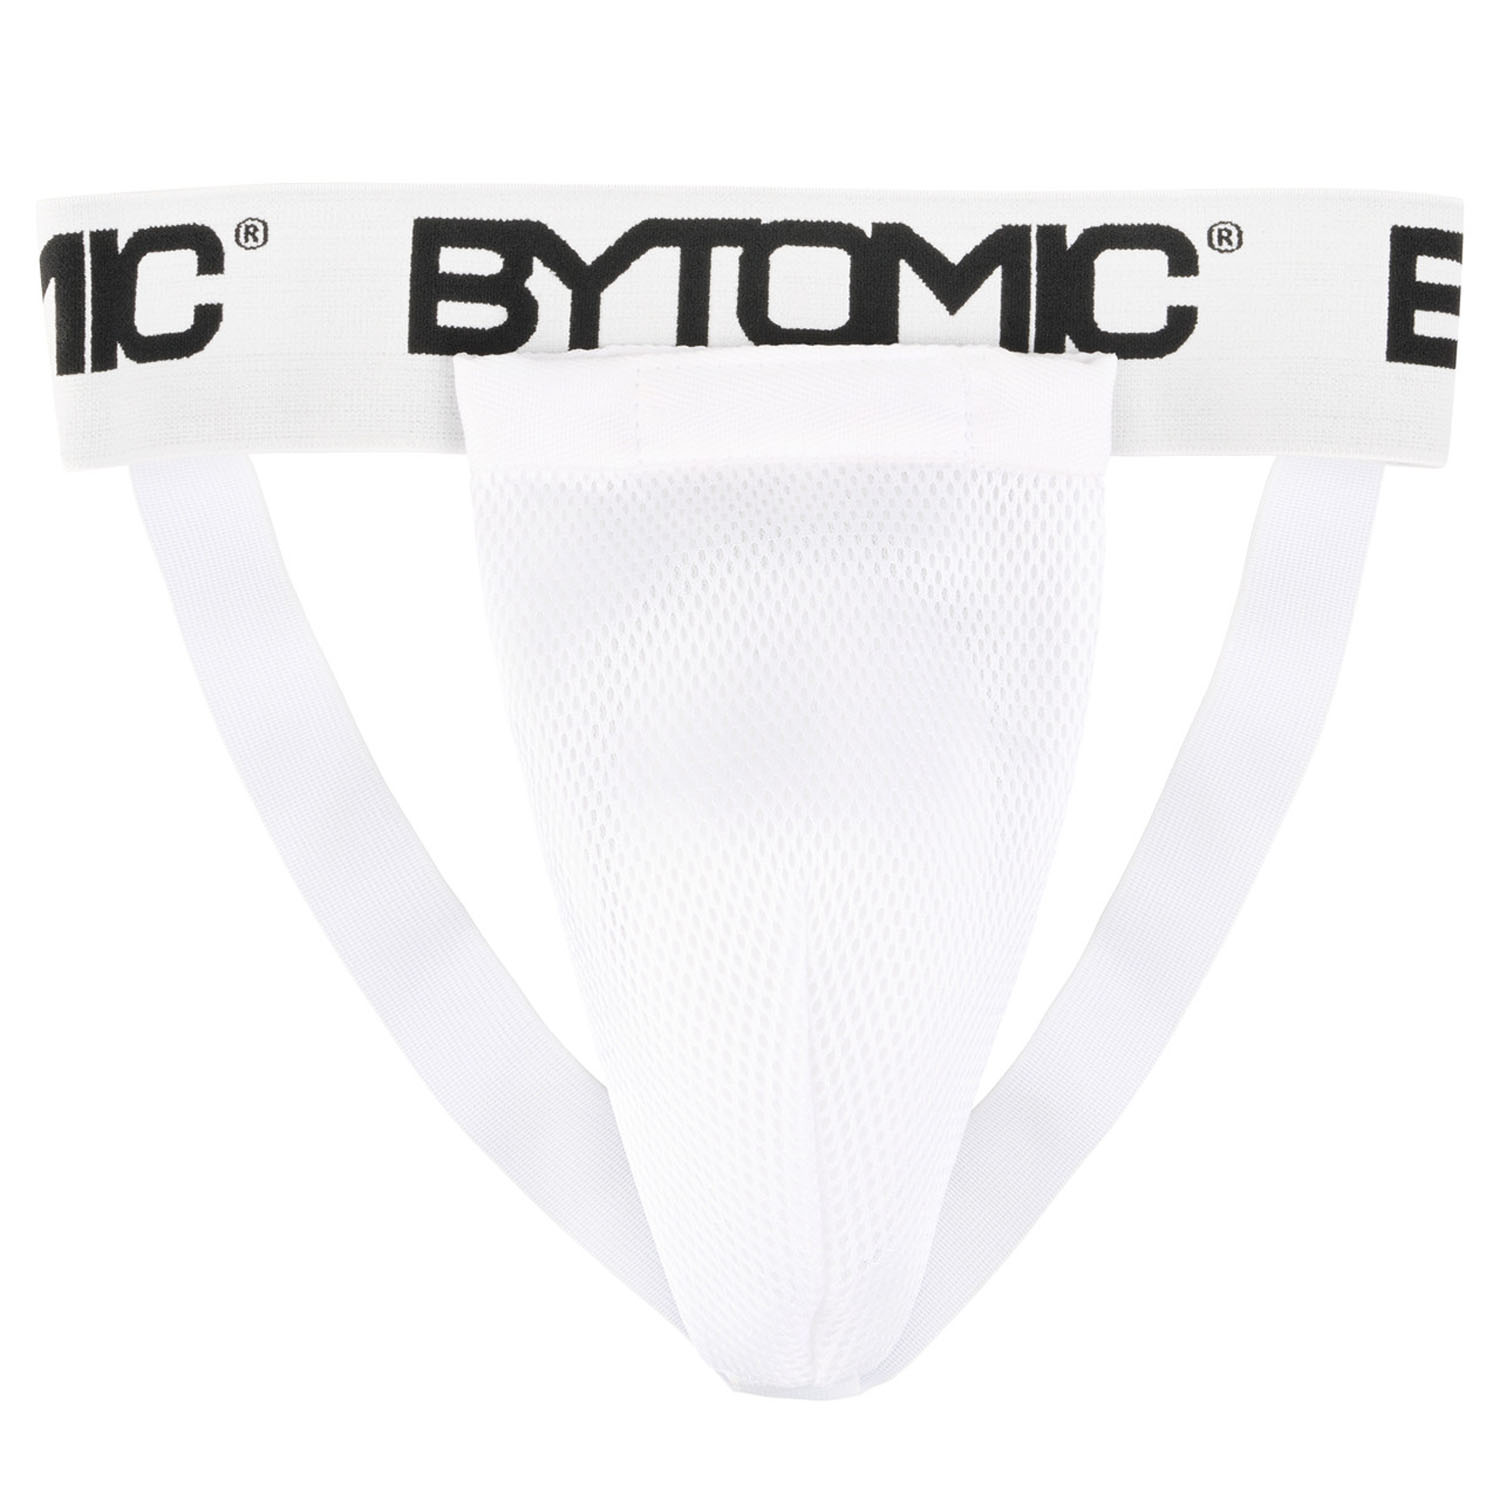 Bytomic Tiefschutz, Performer, weiß-schwarz